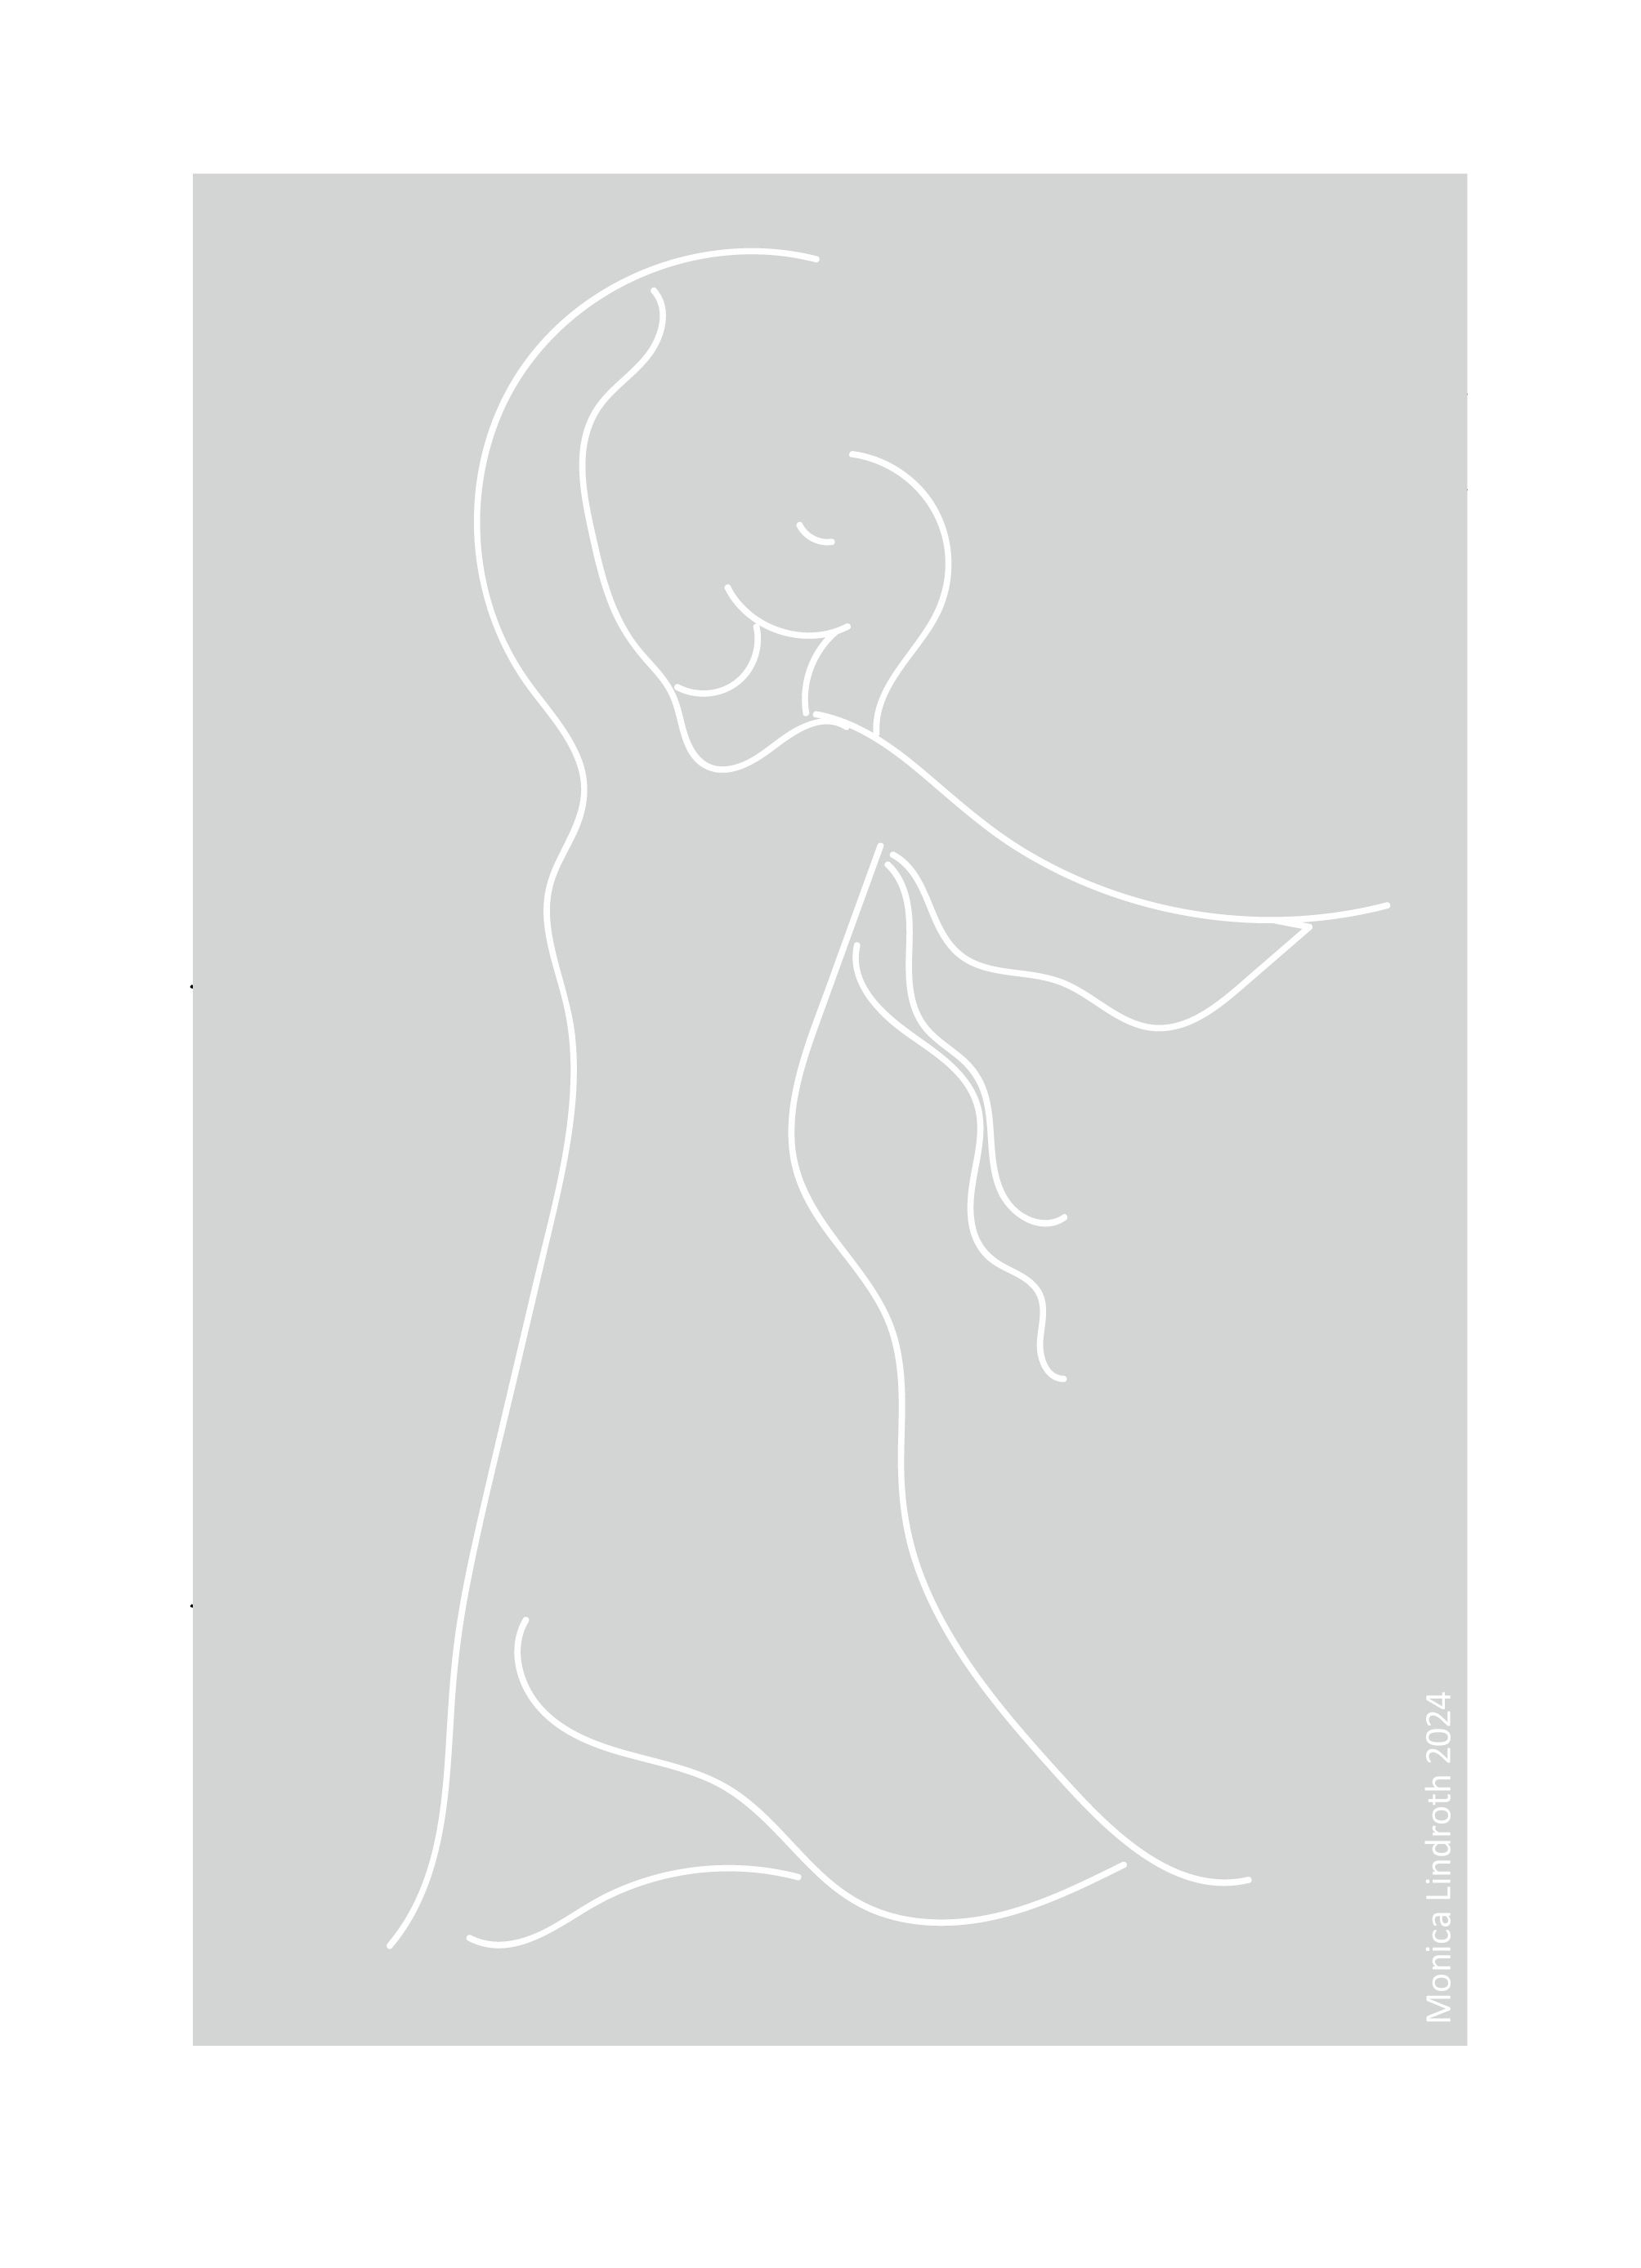 Maria dansar, illustration av Monica Lindroth